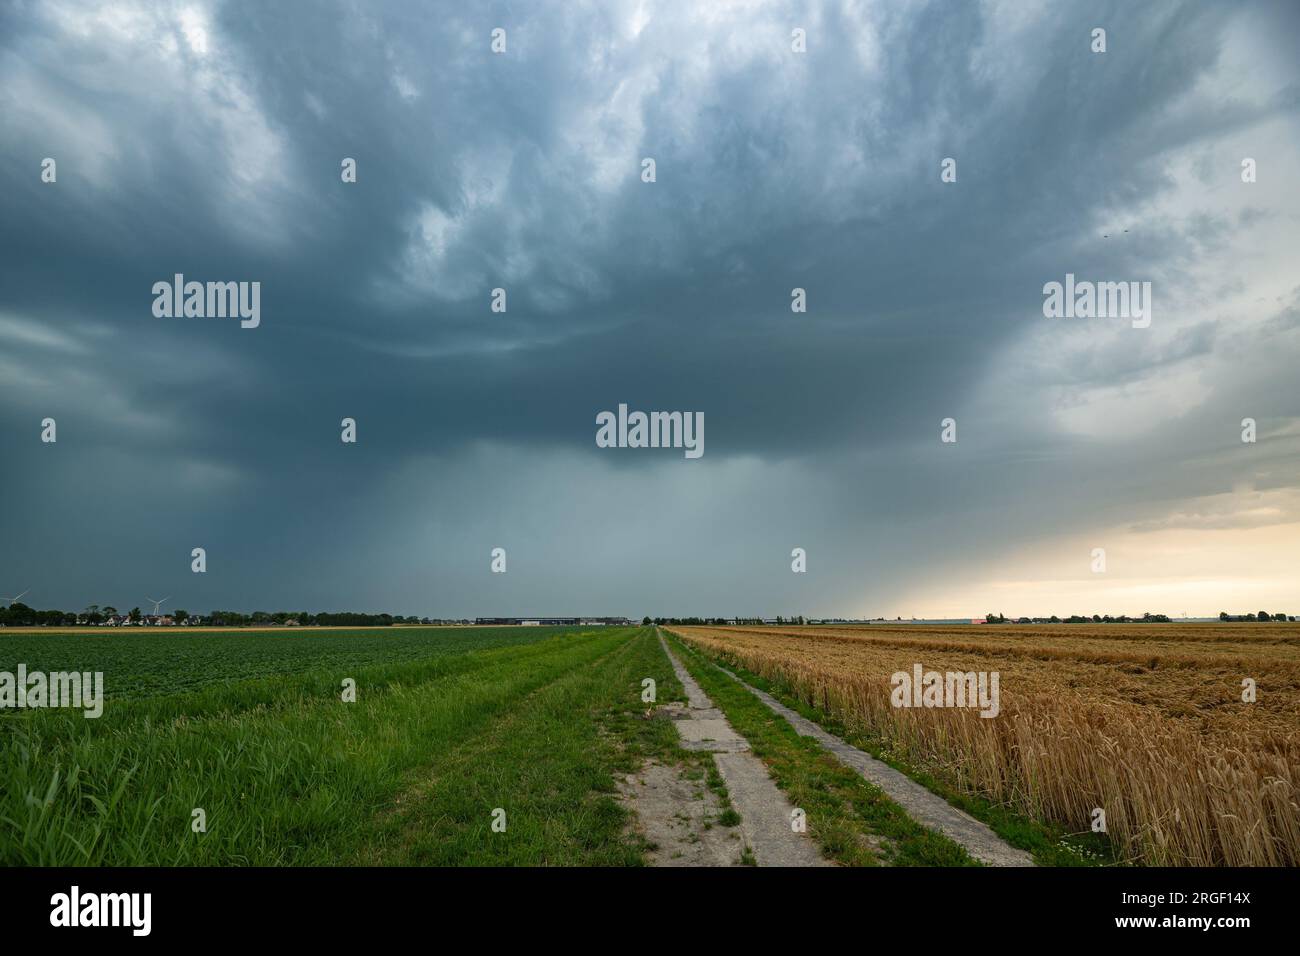 Dramatisches Landschaftsbild einer Landstraße, die zu einer Sturmwolke mit Hagel und starkem Regen führt Stockfoto